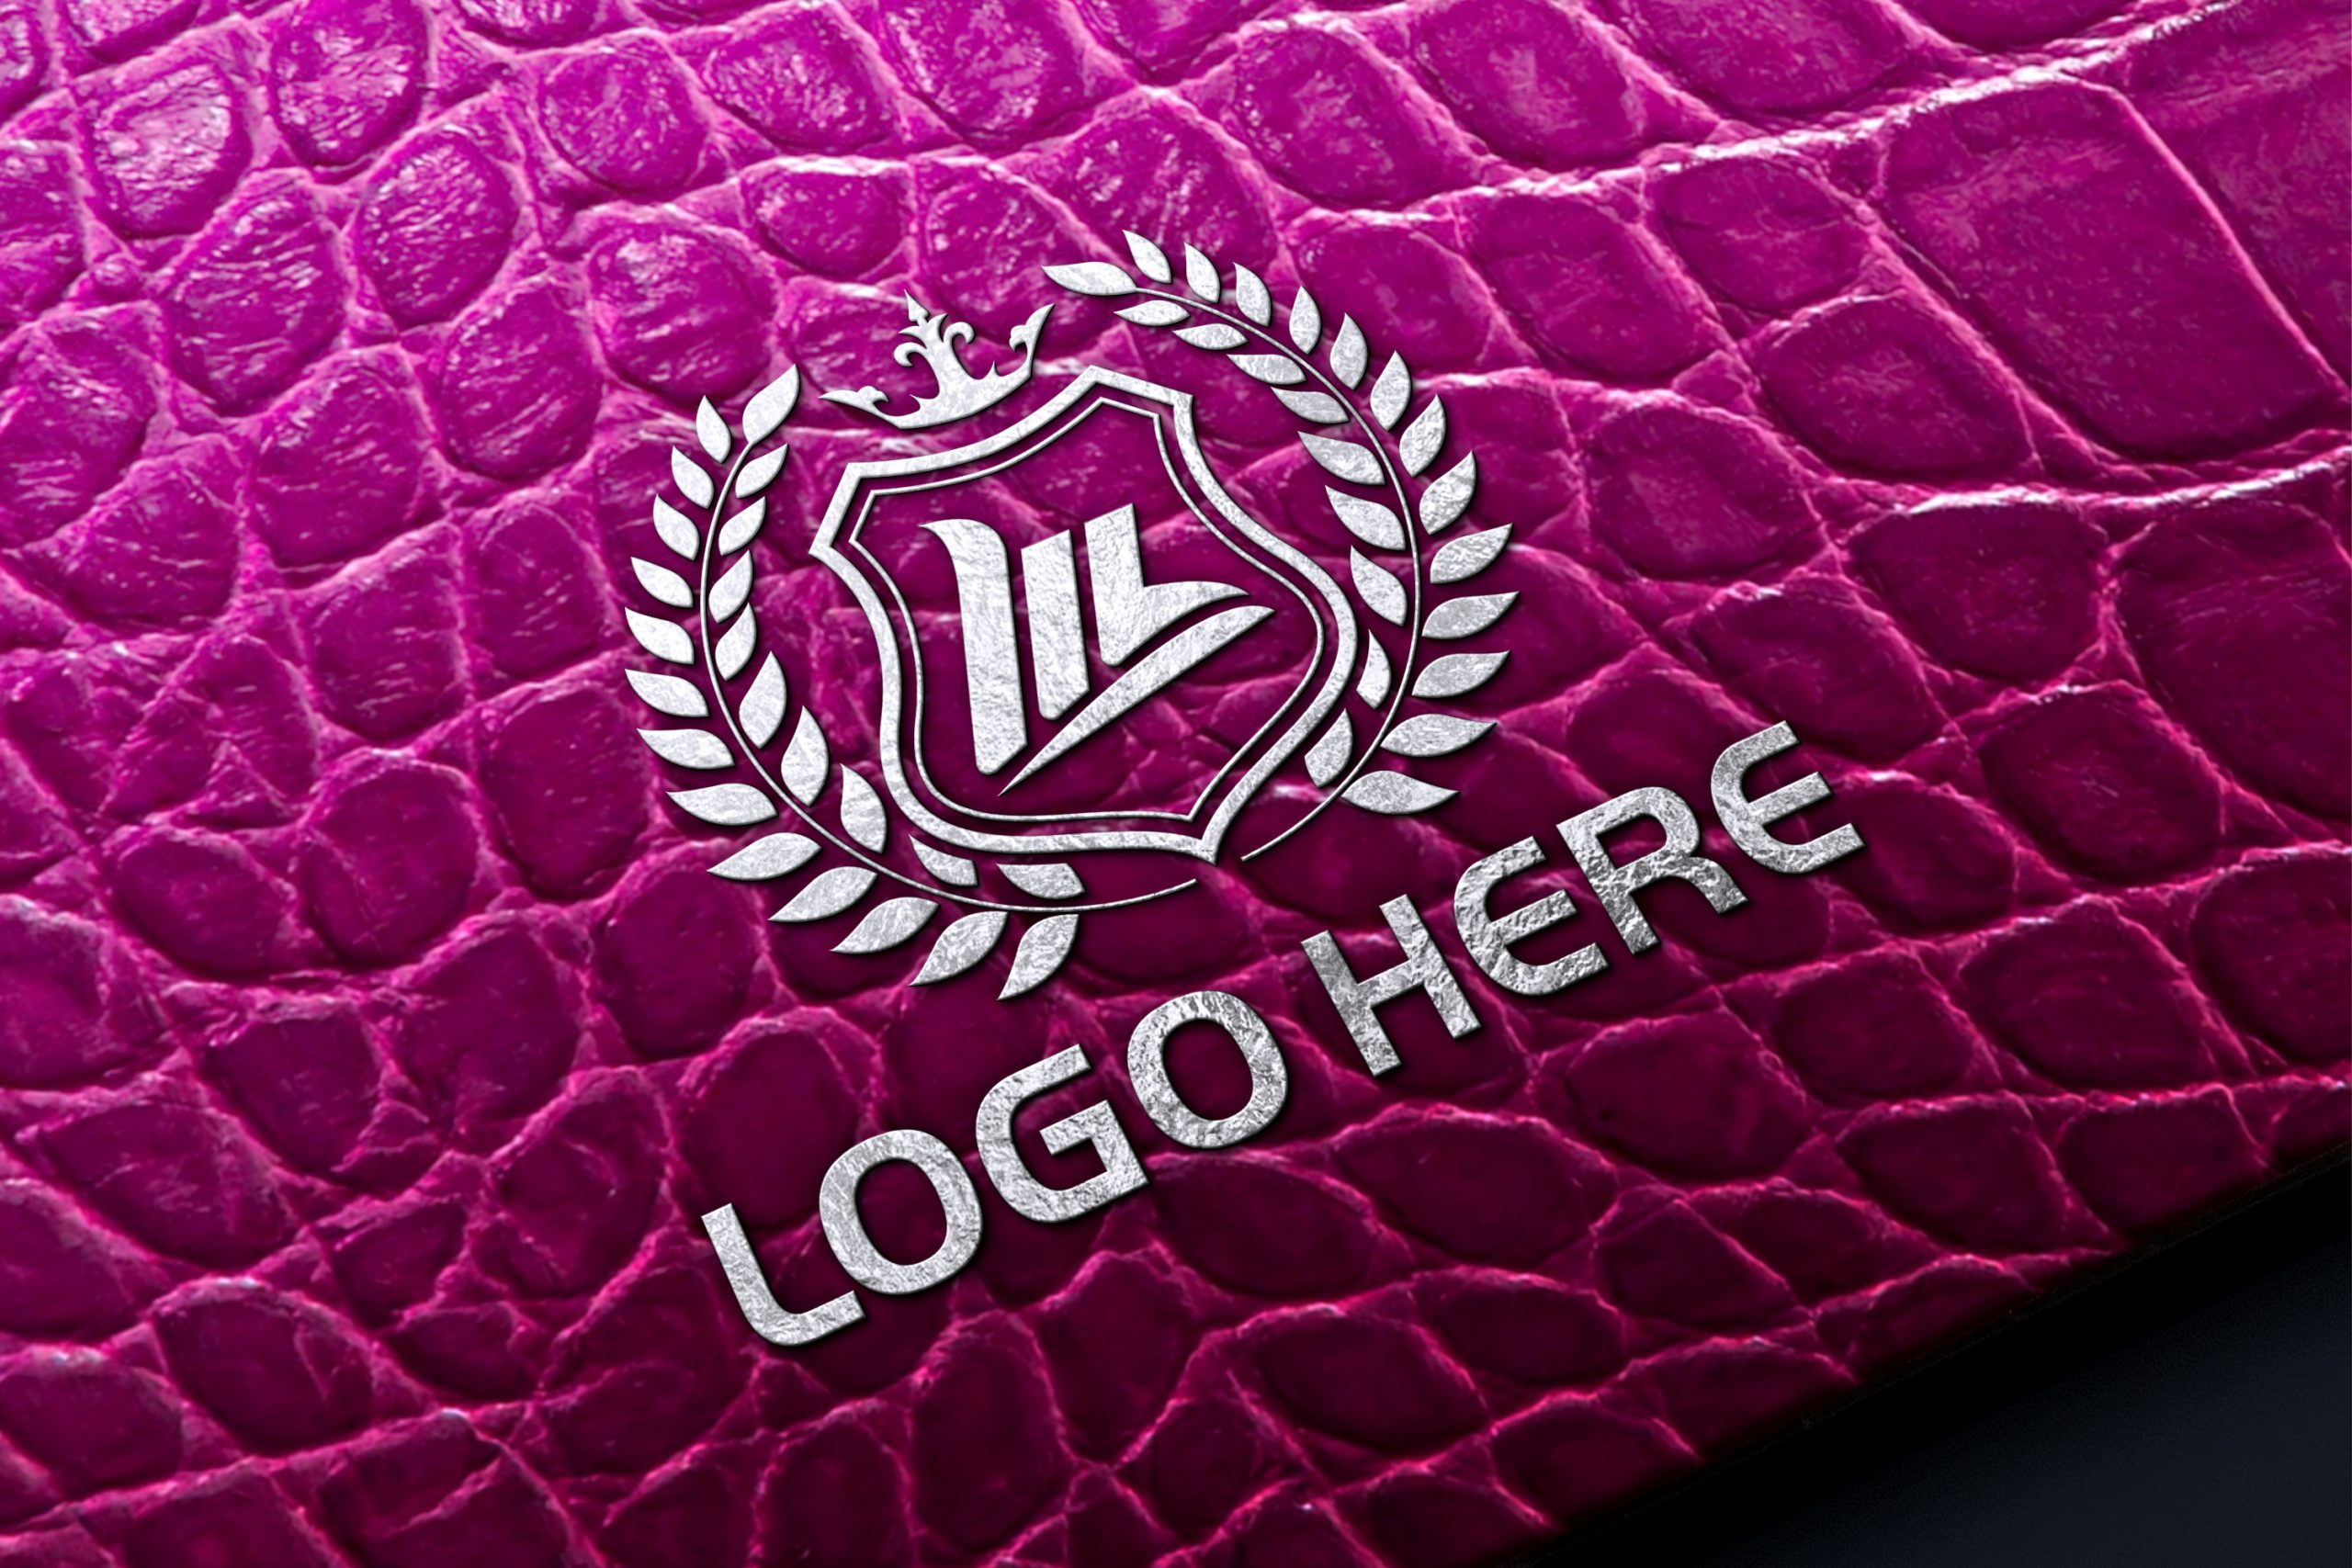 pink alligator logos